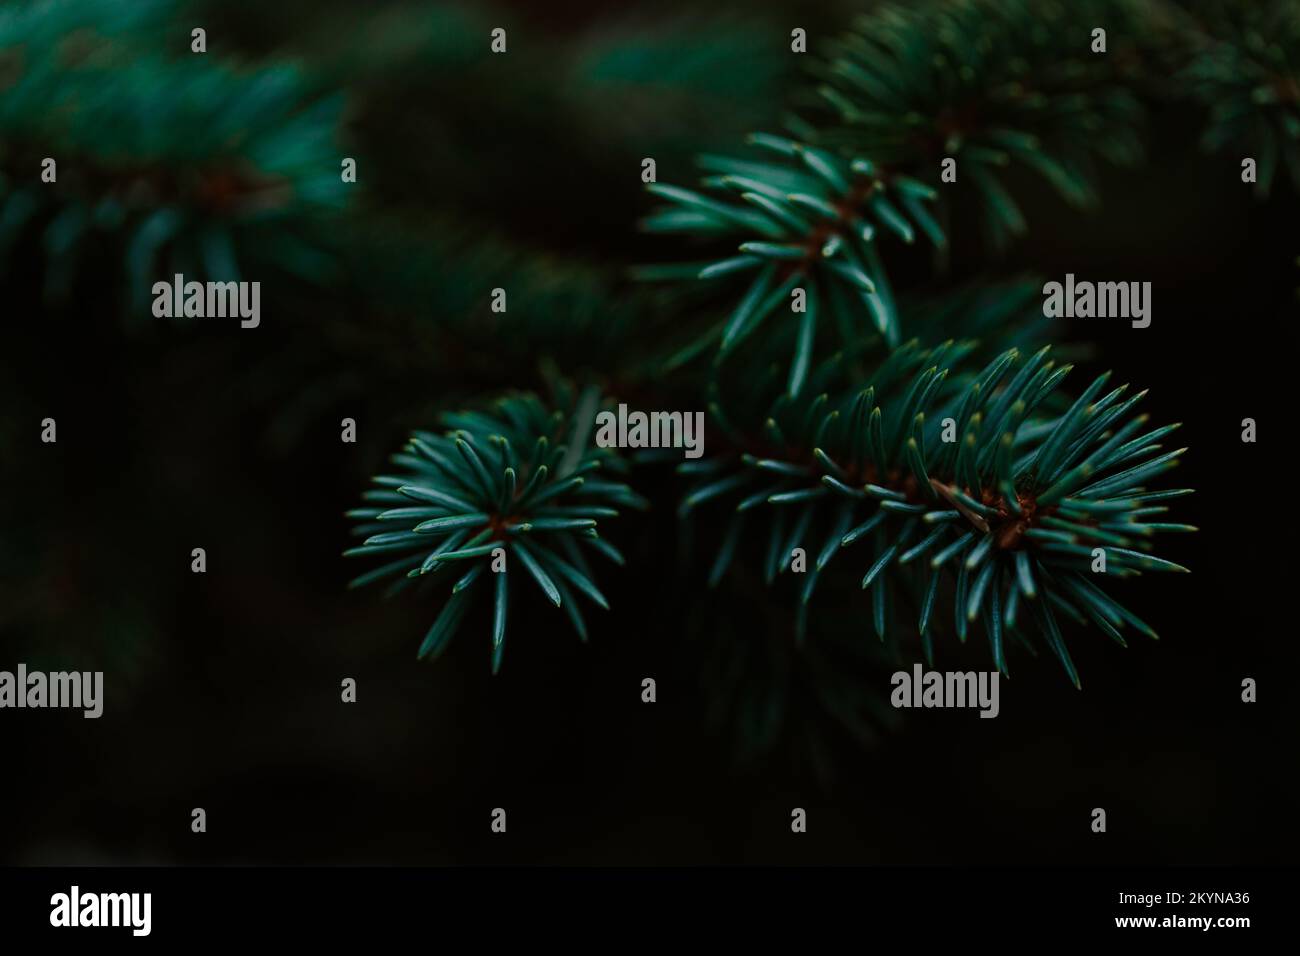 dark moody pine tree background Stock Photo